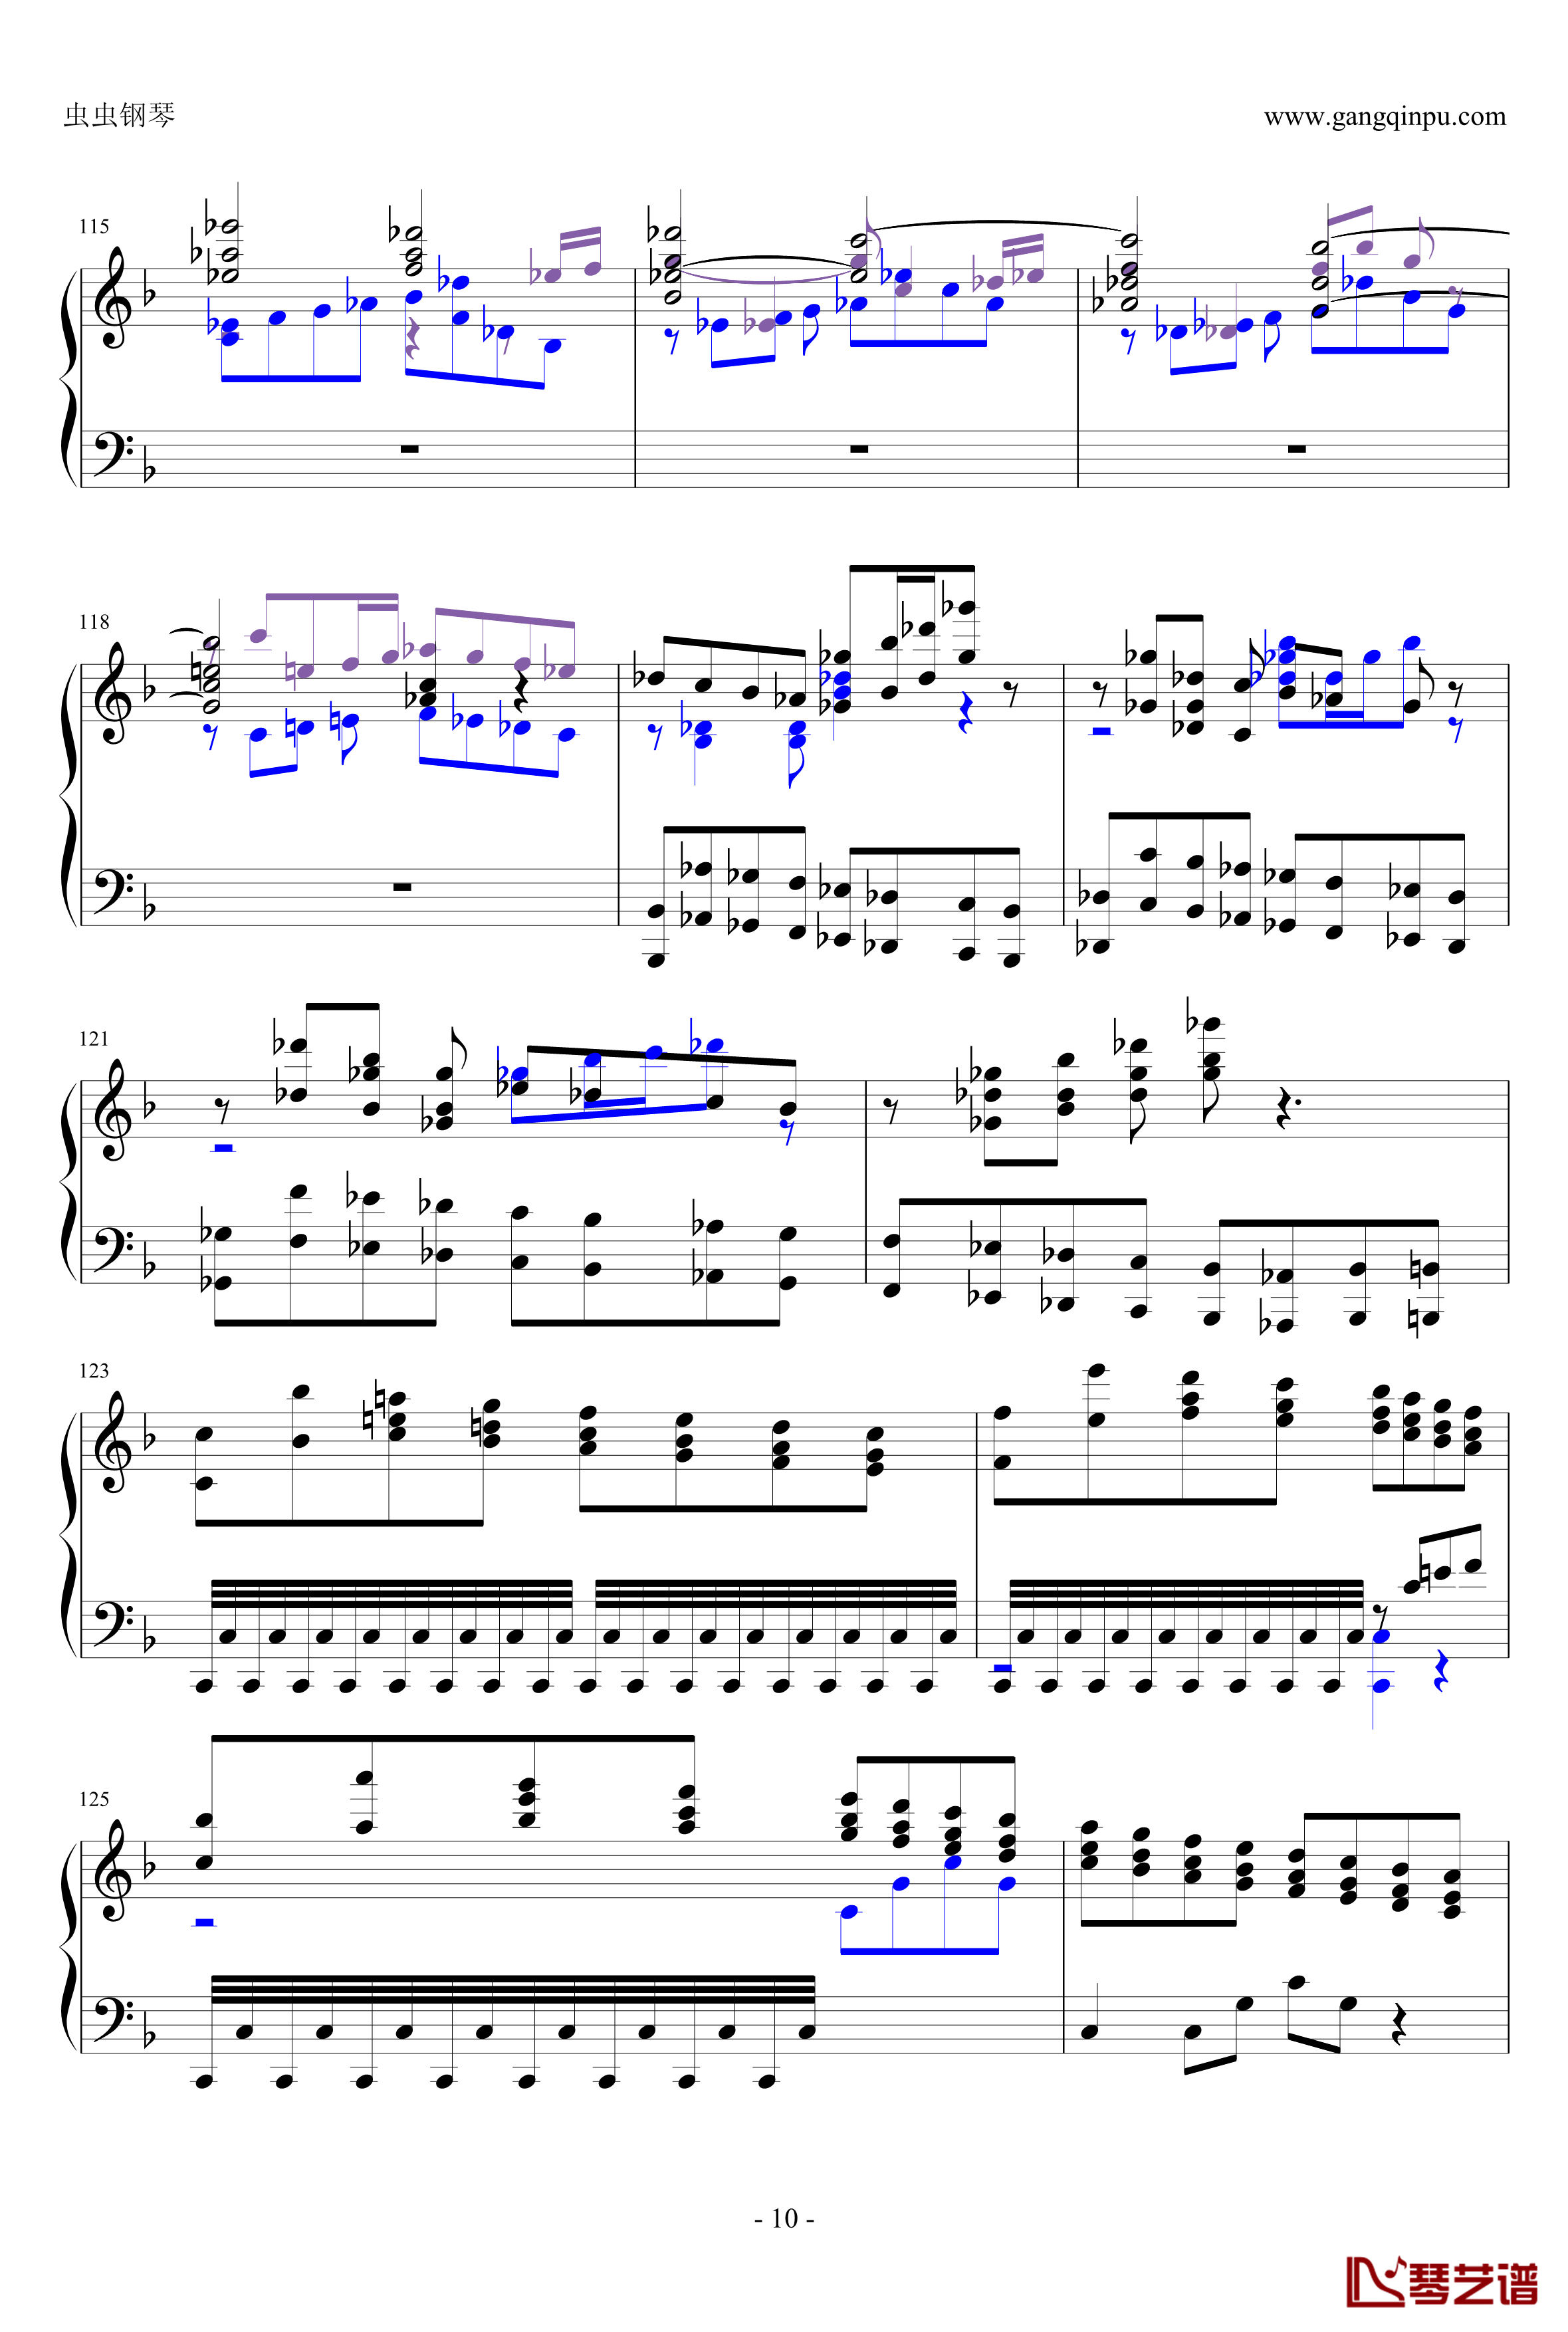 布鲁克纳第五交响曲第四乐章钢琴谱-钢琴独奏版10